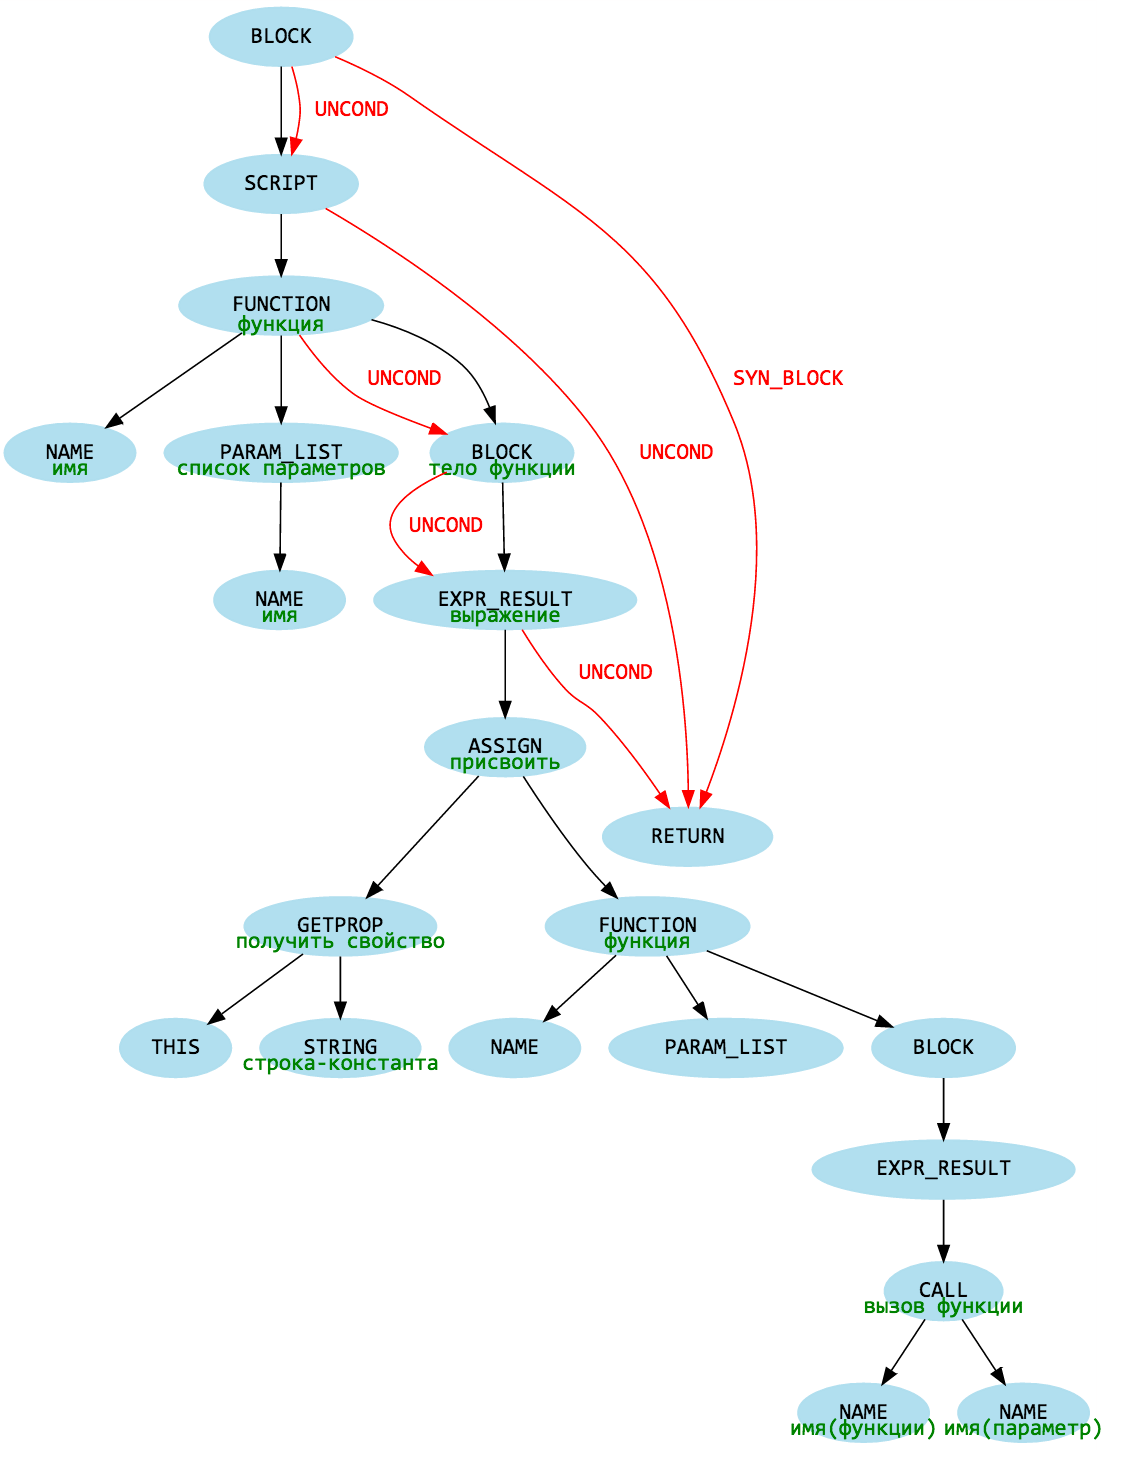 Дерево скрипт. Дерево js. Дерево файлов и каталогов. Структуры данных js. Js дерево прототипов всех объектов.